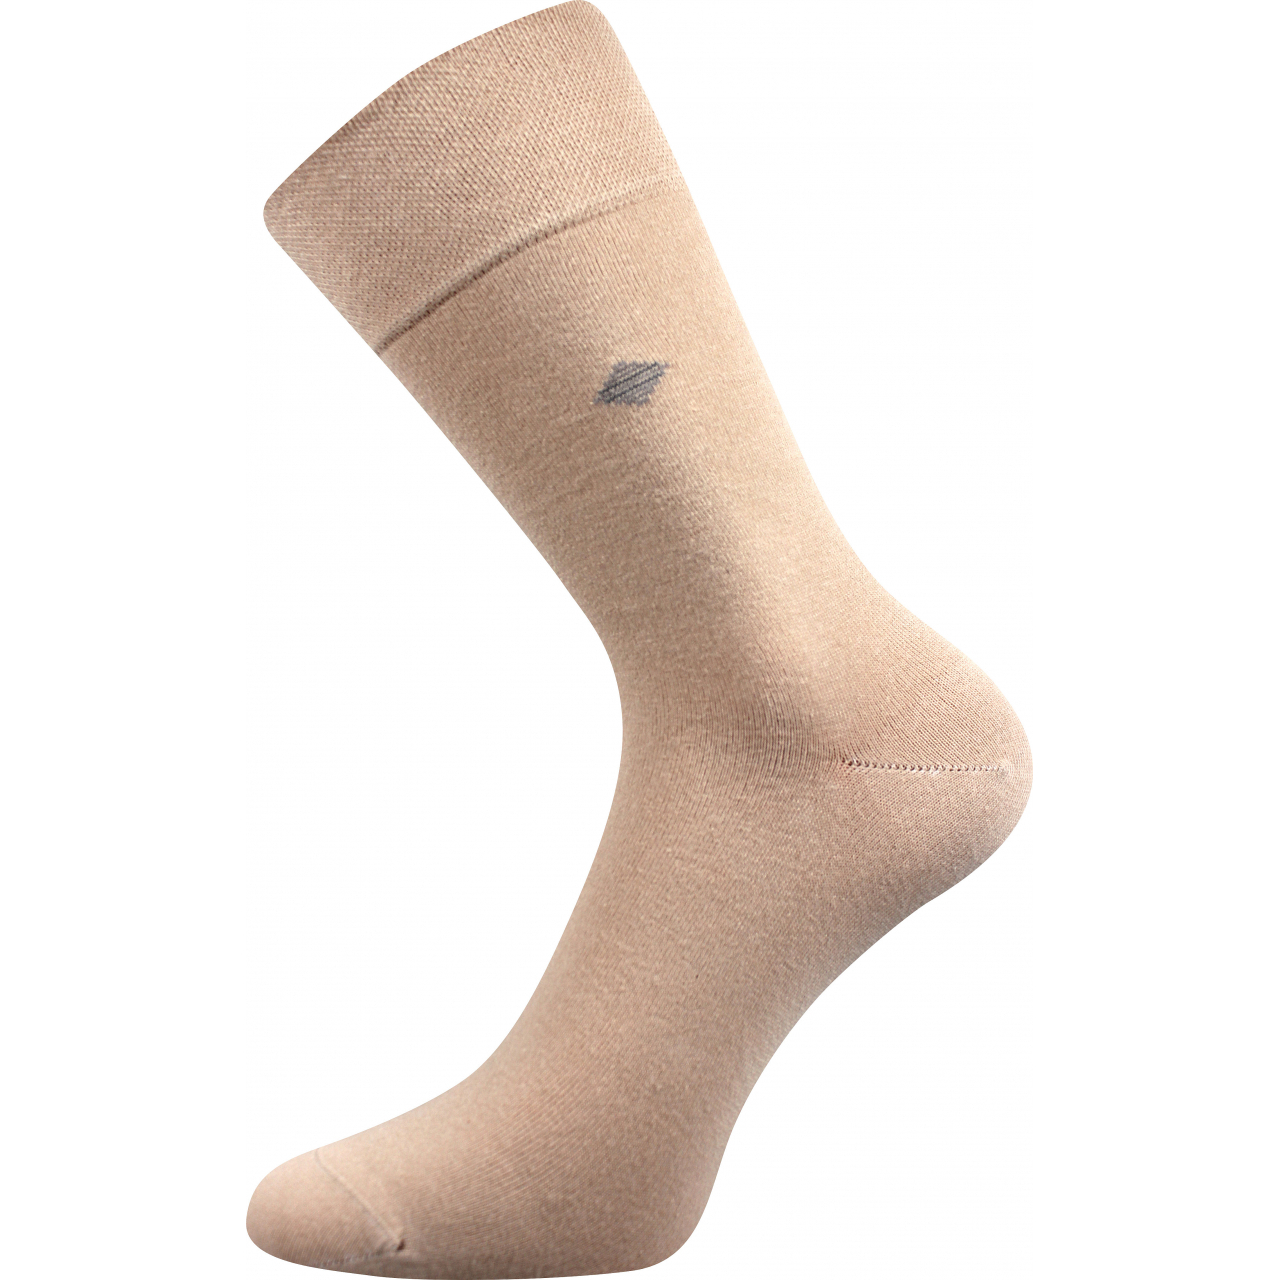 Ponožky pánské společenské Lonka Diagon - béžové, 39-42